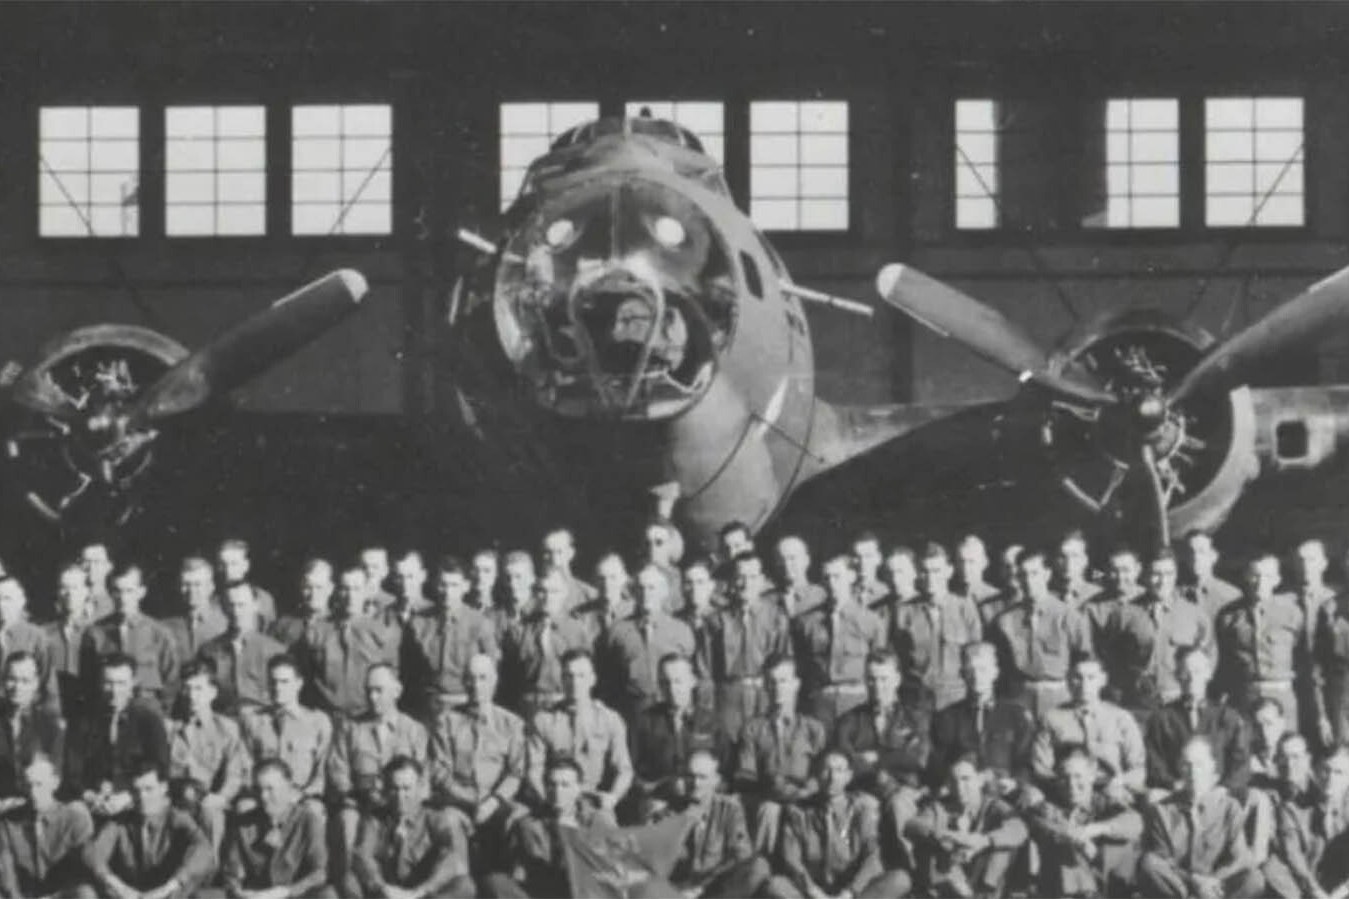 A photo of flight crews outside a hangar at Casper Army Air Base.